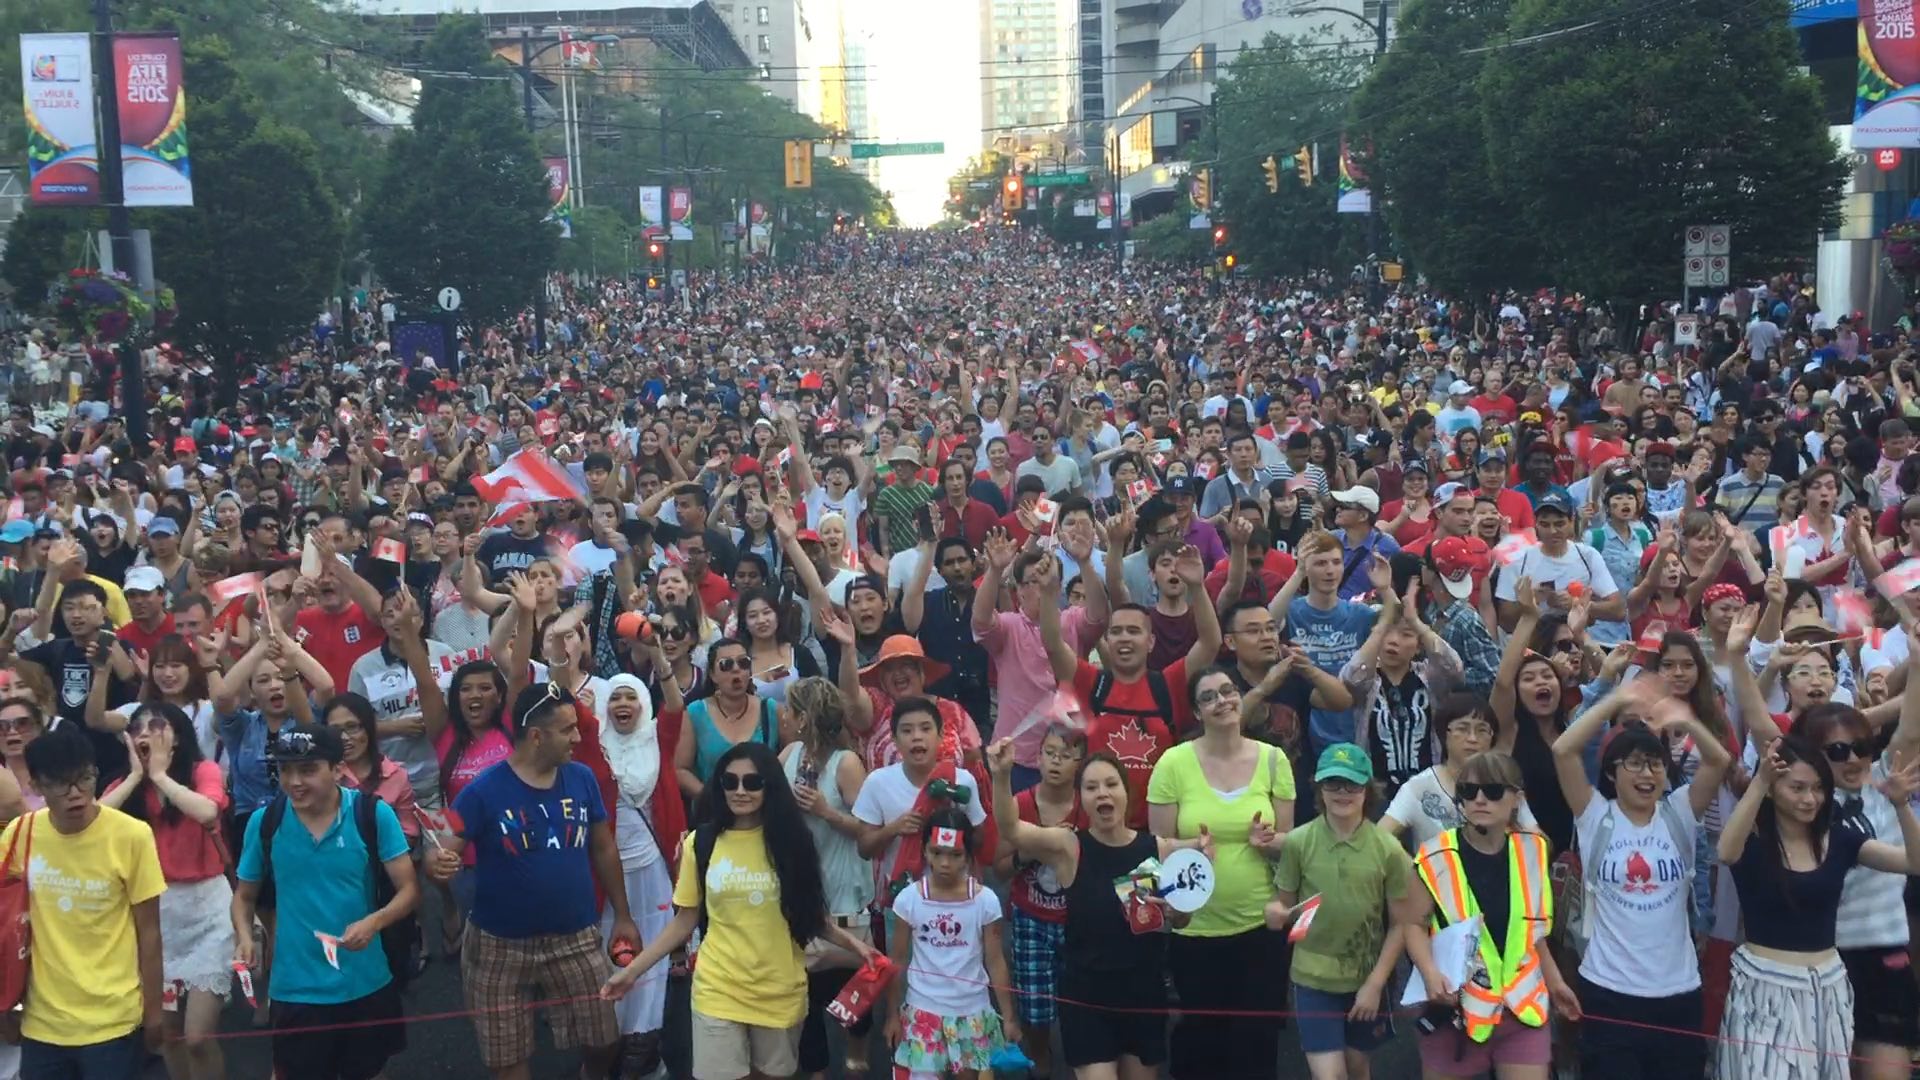 Canada Day 2015 Crowd.jpg